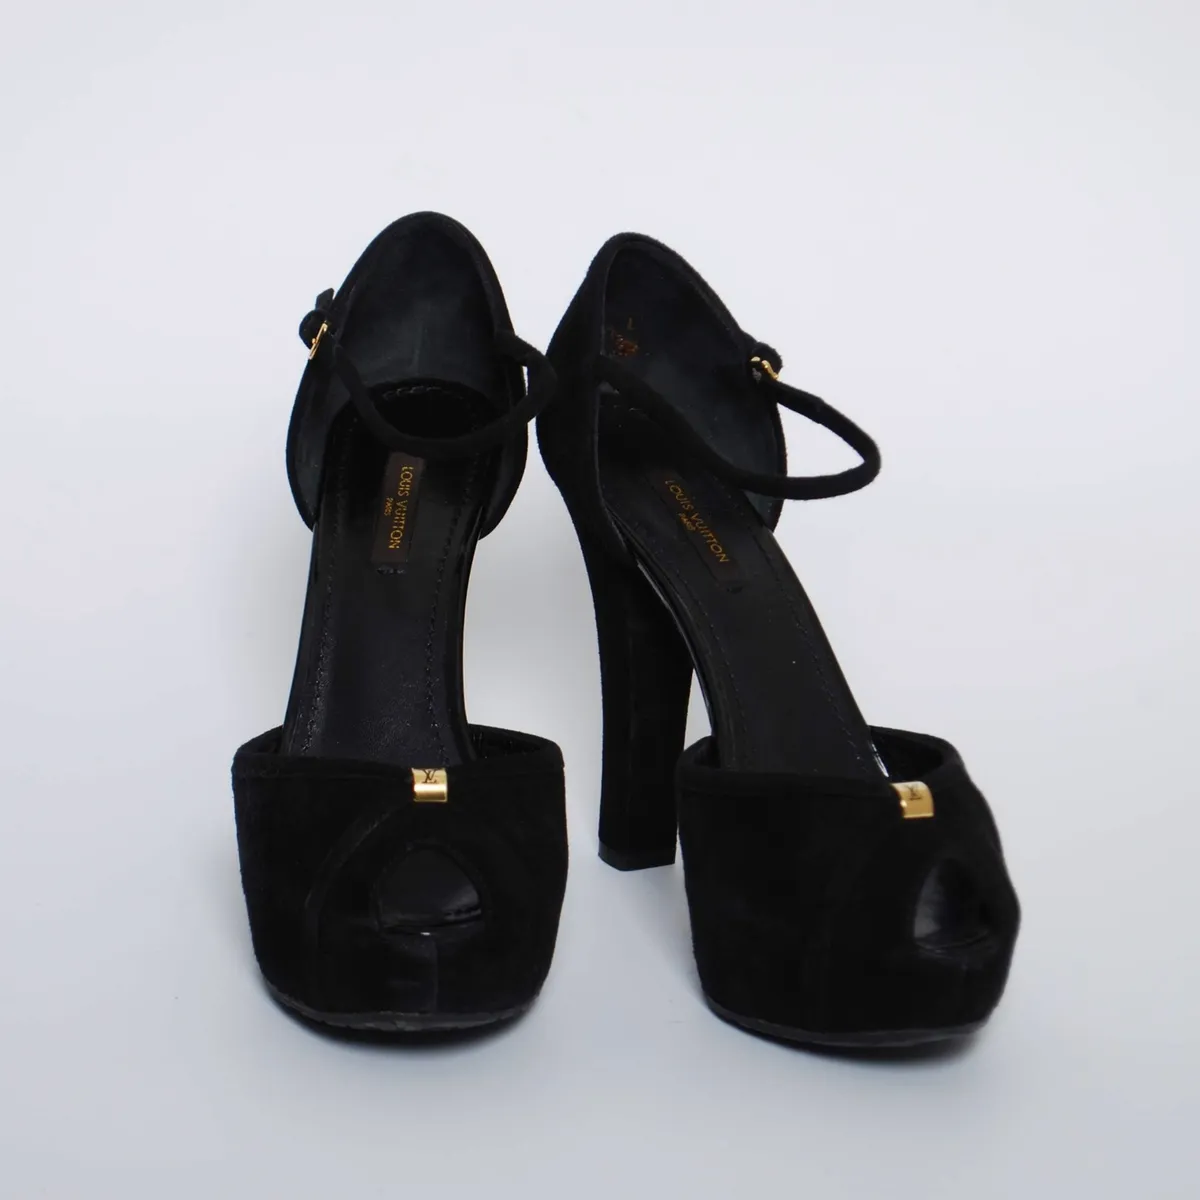 LOUIS VUITTON black leather sandal heels